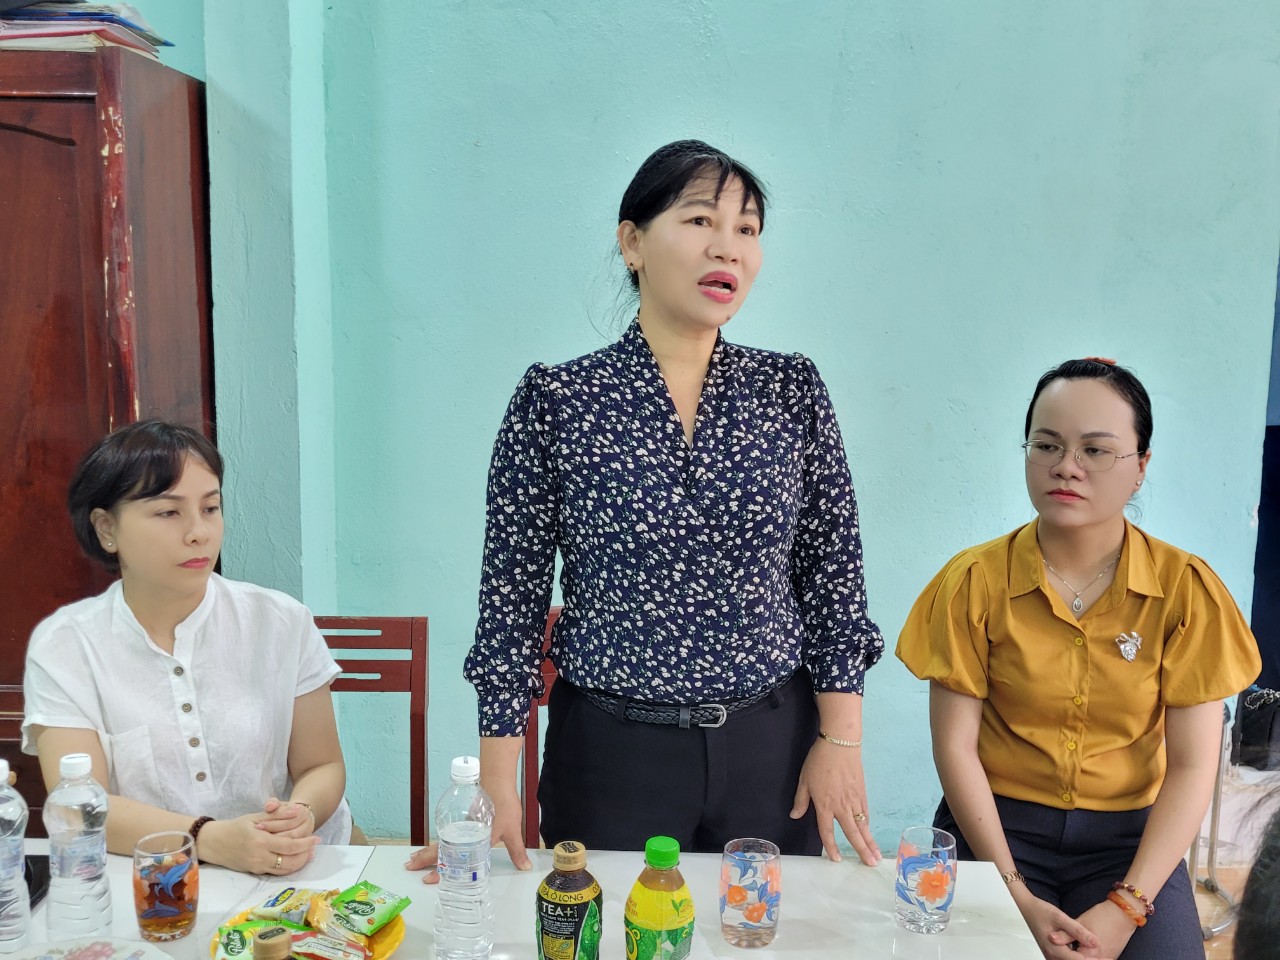 Bà Trần Thị Phương Hoa – Phó Chủ tịch Hội LHPN TP.HCM cảm ơn nhà tài trợ, chính quyền địa phương đã hỗ trợ để mái ấm tình thương dành cho gia đình bà Nguyễn Thị Kim Ba được hoàn thành